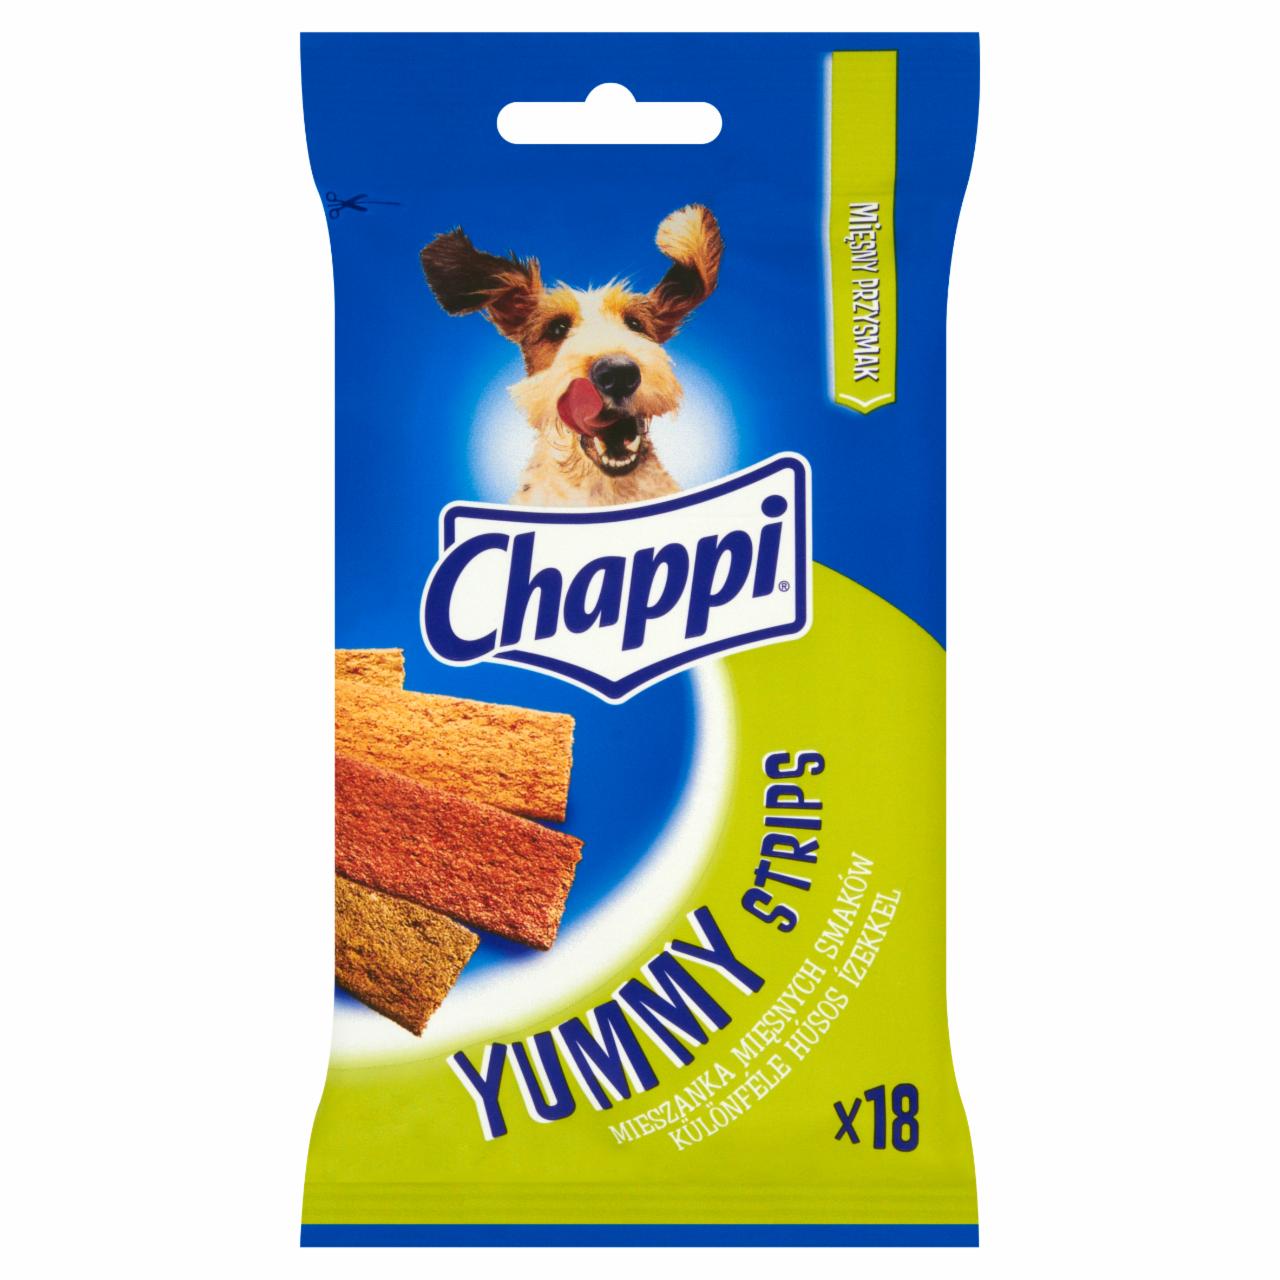 Zdjęcia - Chappi Yummy Strips Mieszanka mięsnych smaków Karma uzupełniająca 90 g (18 sztuk)